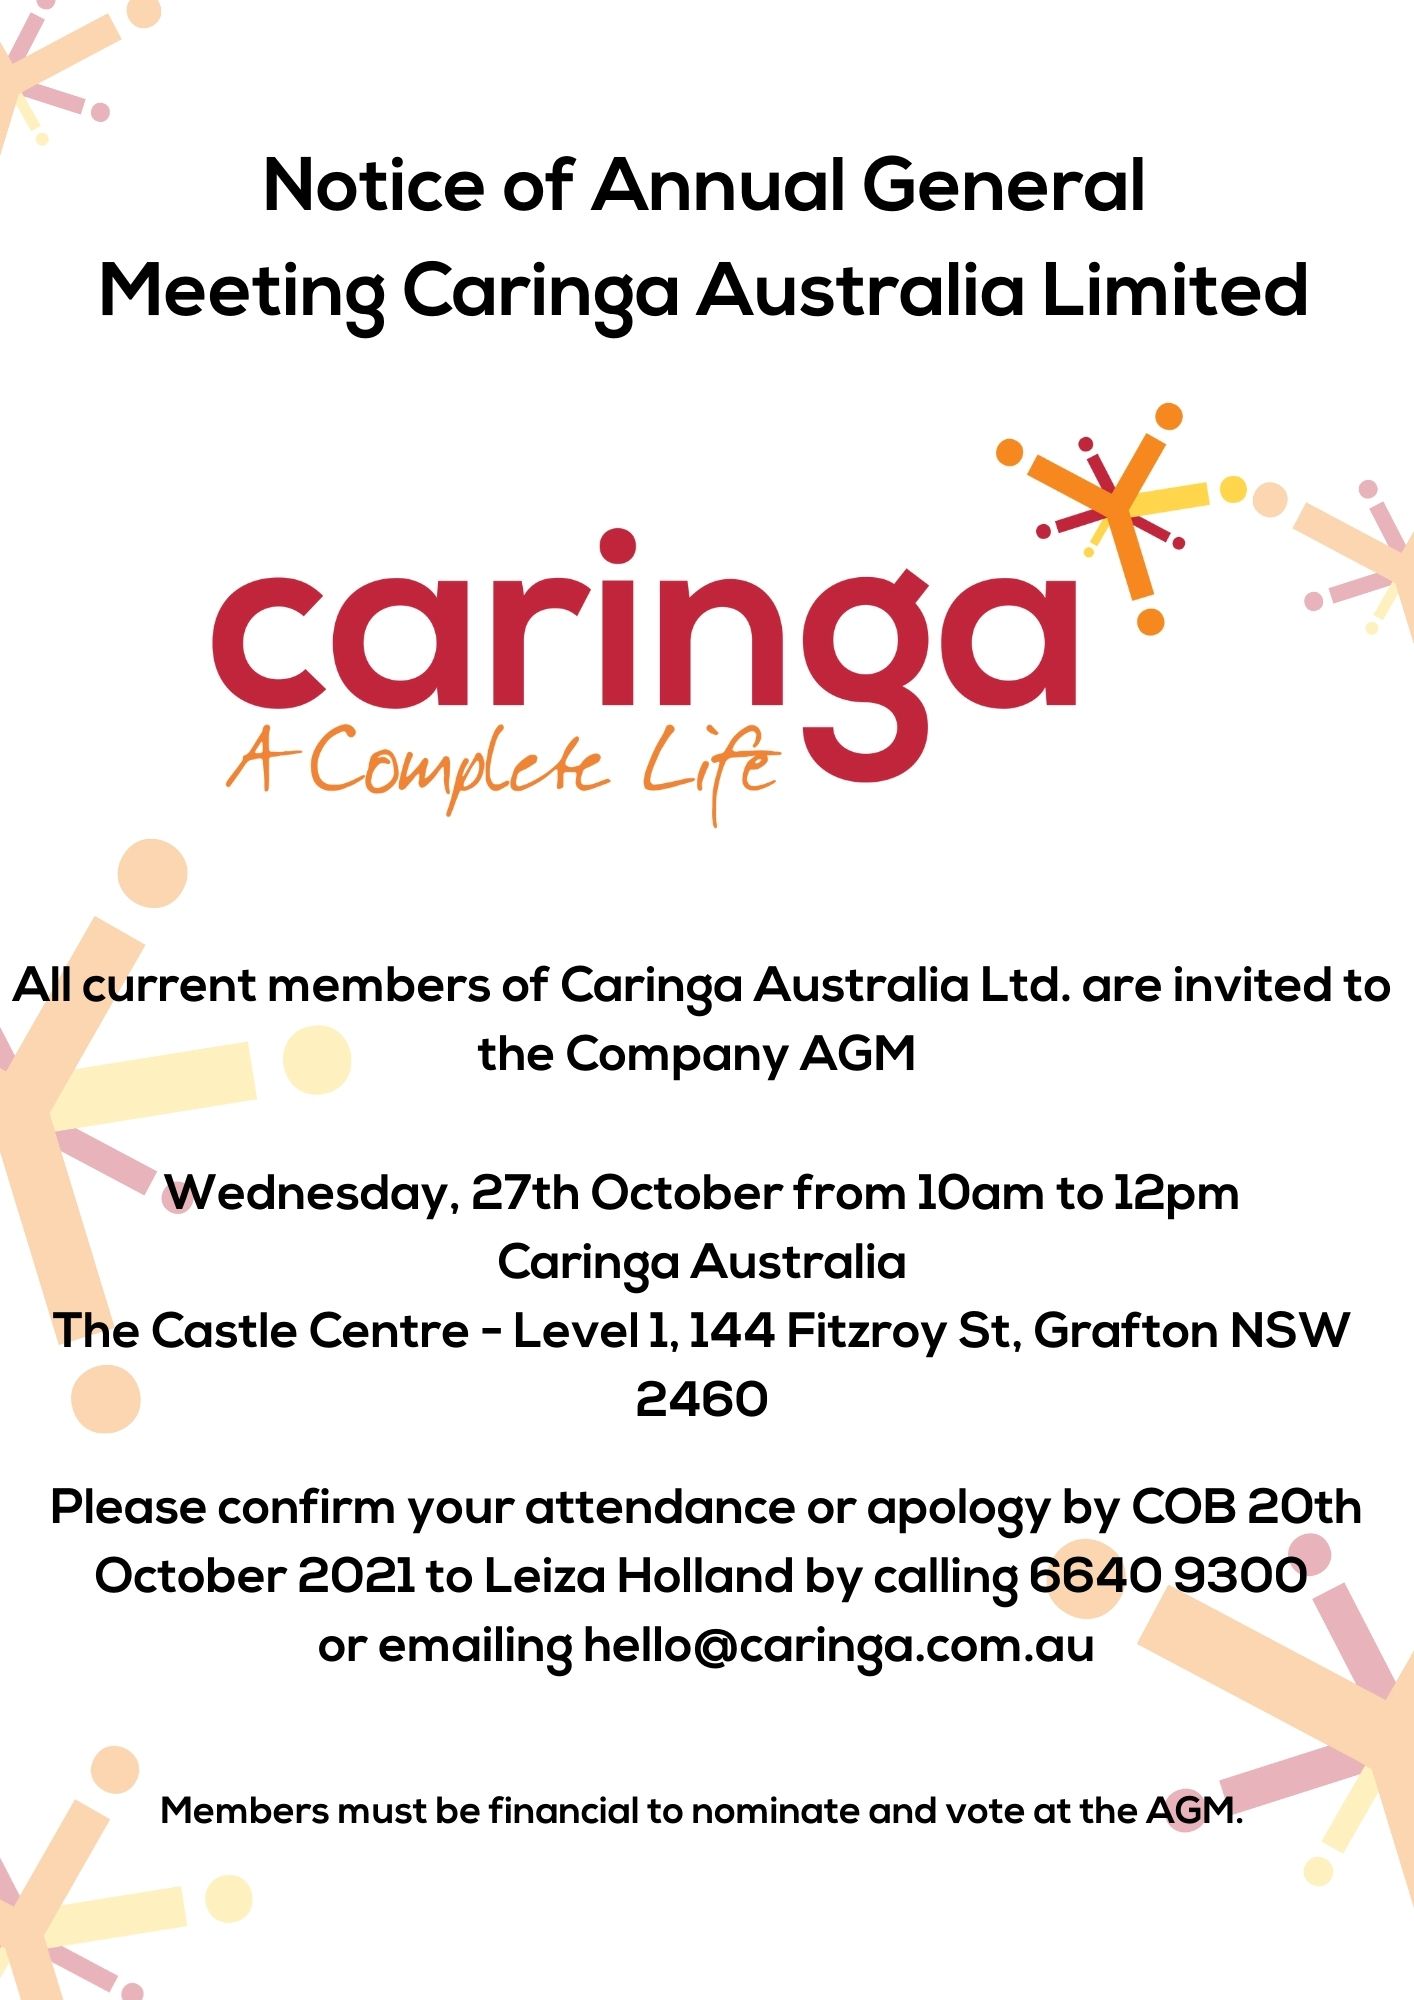 Notice of Caringa Australia’s Annual General Meeting